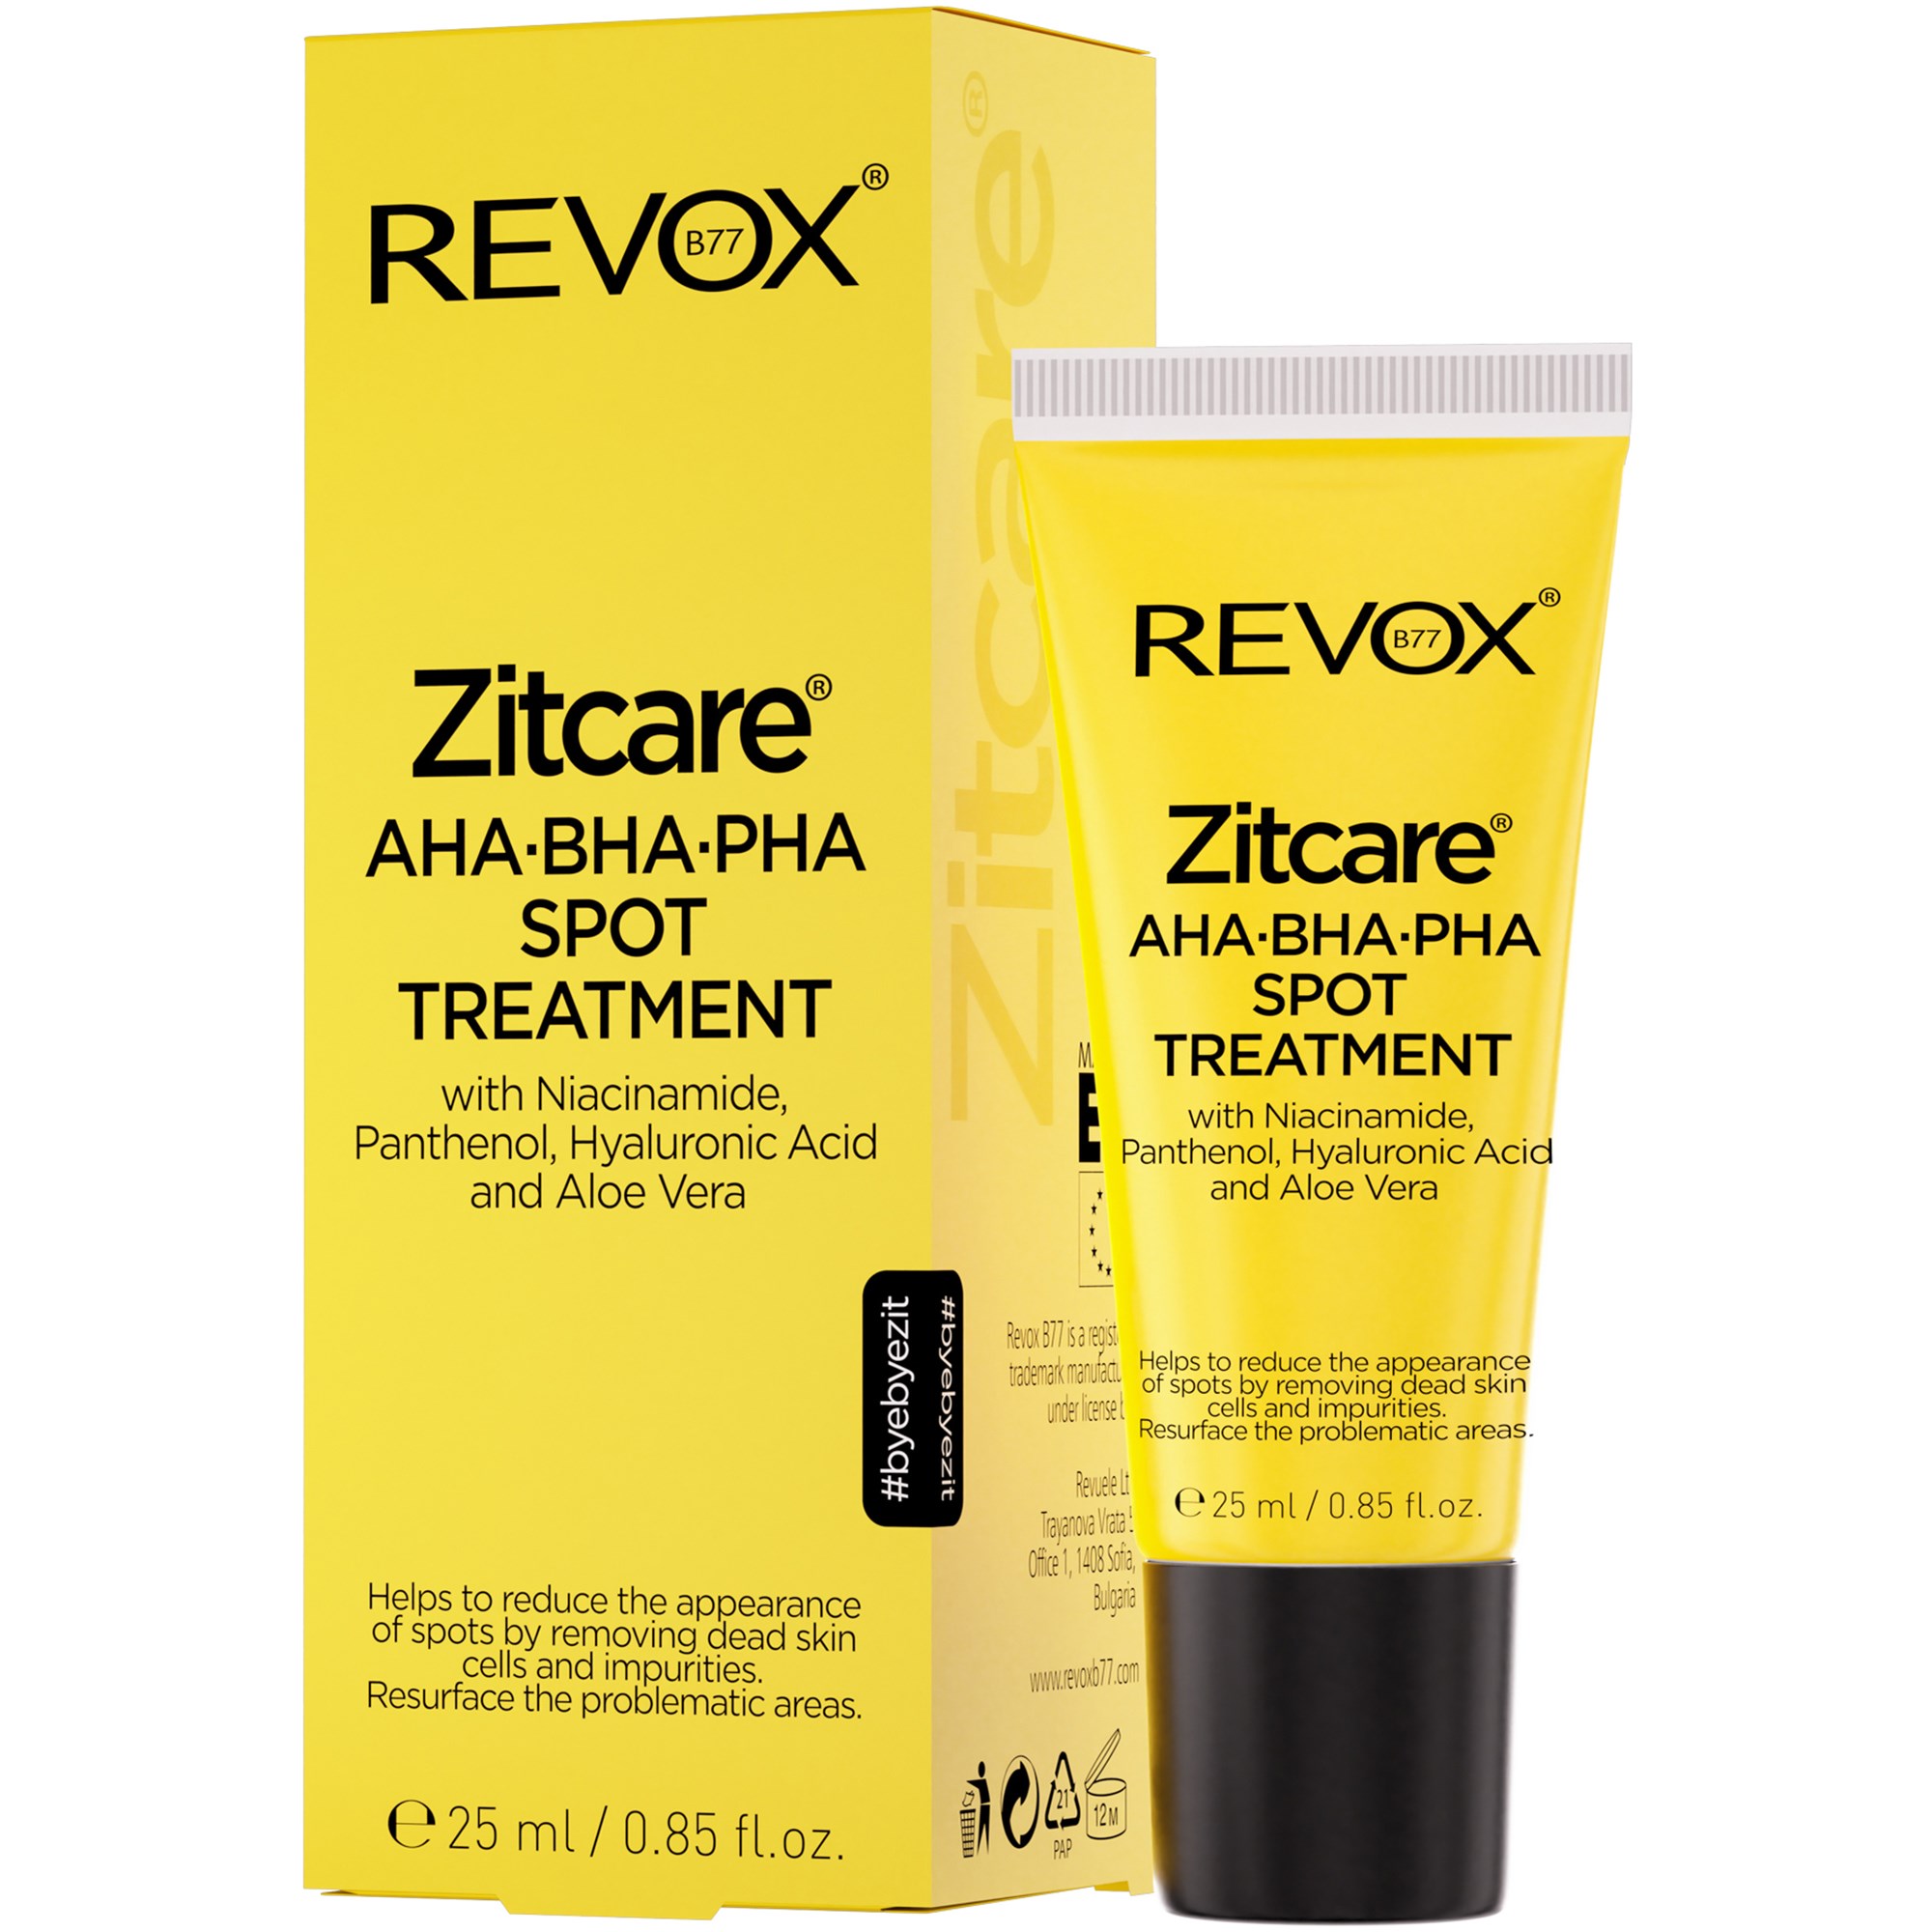 Läs mer om Revox Zitcare® REVOX B77 AHA.BHA.PHA. Spot Treatment 25 ml